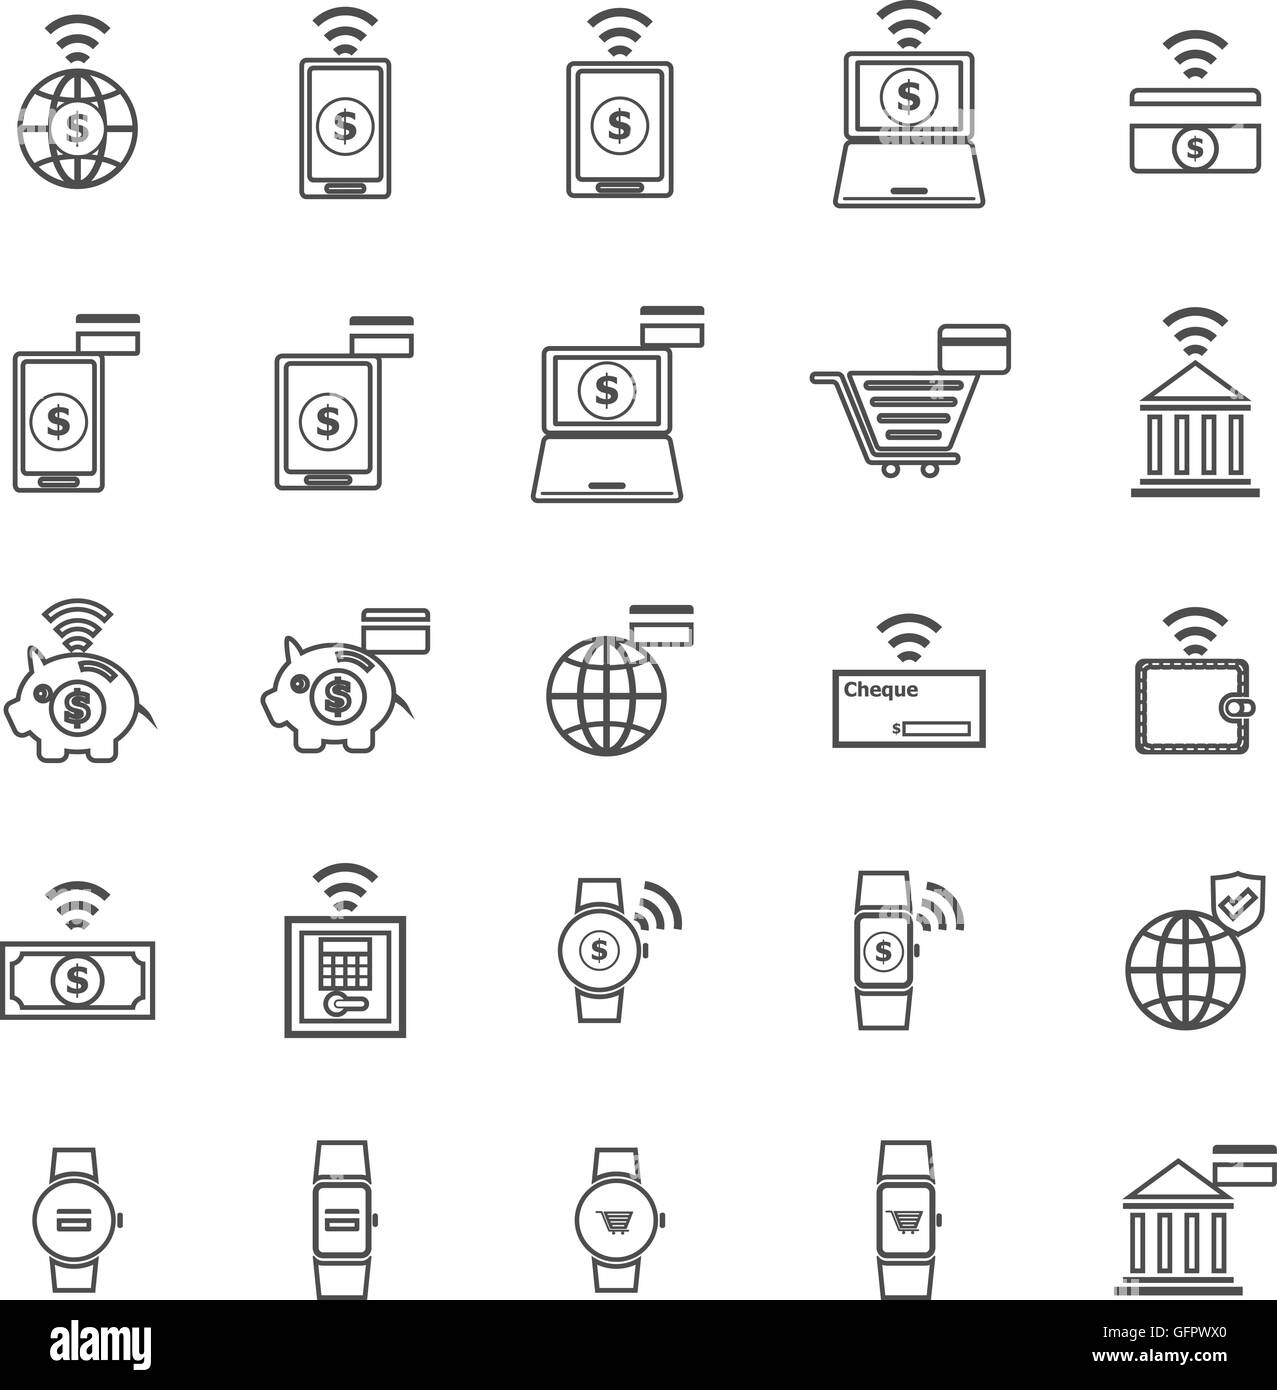 Linea di Fintech icone su sfondo bianco, vettore di stock Illustrazione Vettoriale